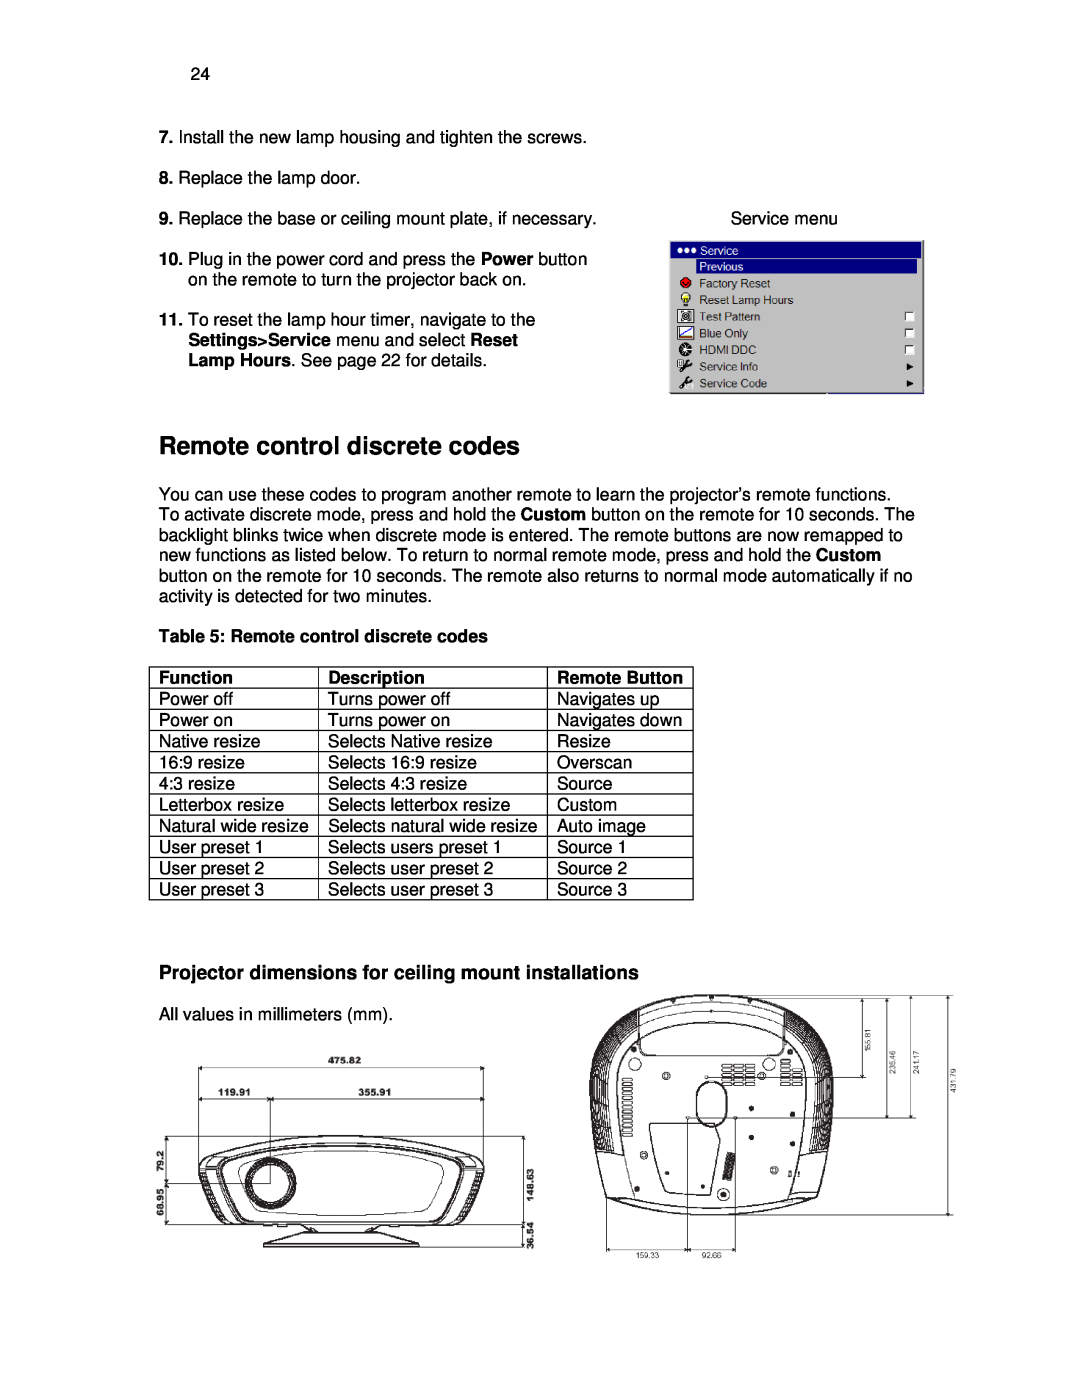 Knoll Systems HDP404 user manual Remote control discrete codes, Function, Description, Remote Button 